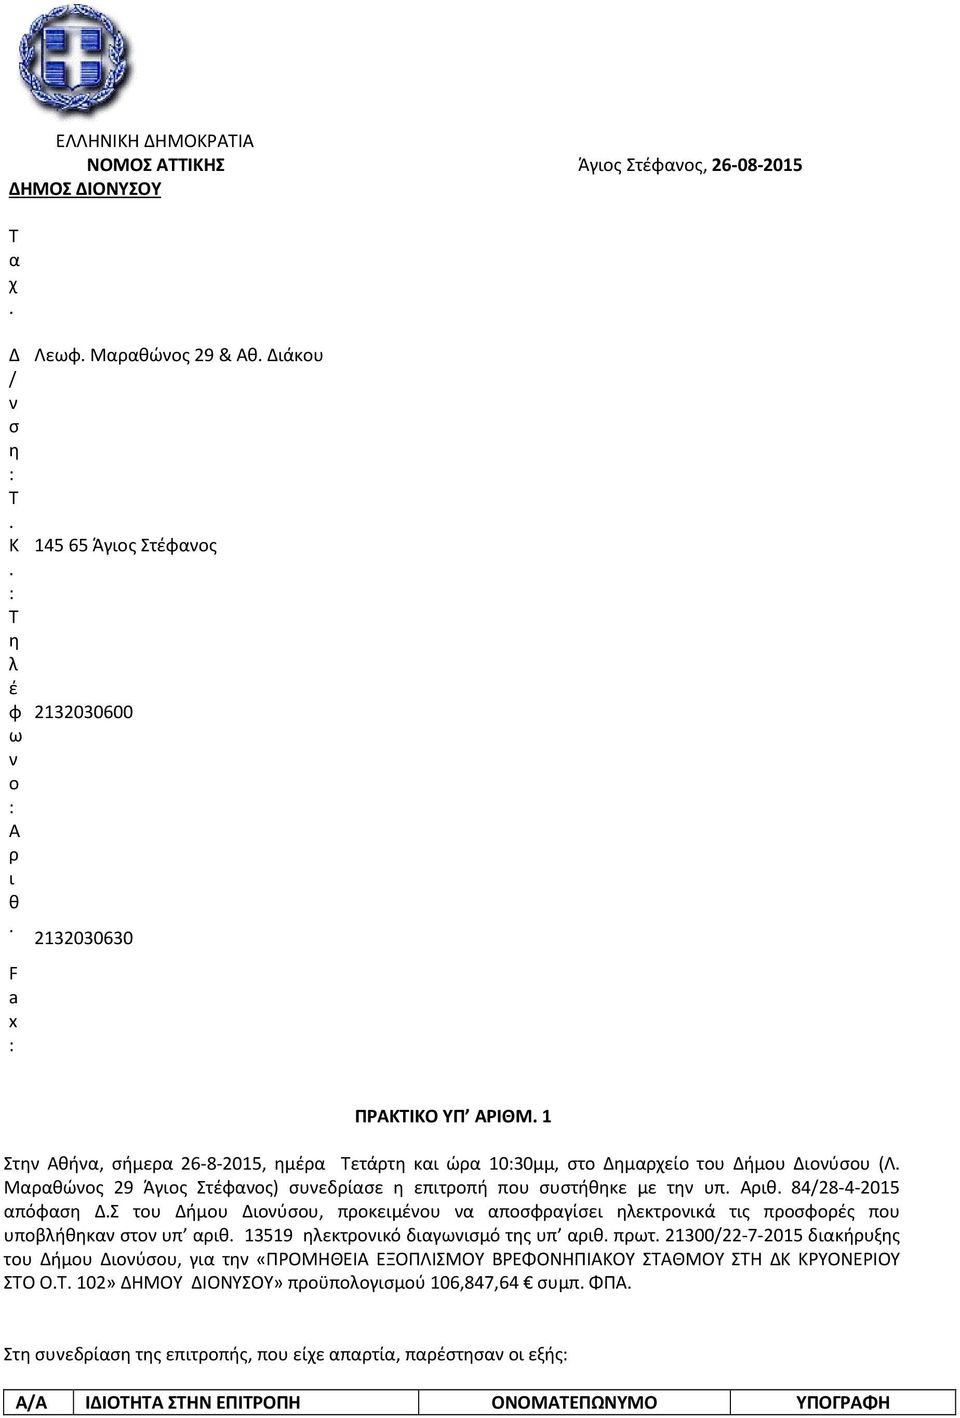 Μαραθώνος 29 Άγιος Στέφανος) συνεδρίασε η επιτροπή που συστήθηκε με την υπ. Αριθ. 84/28-4-2015 απόφαση Δ.